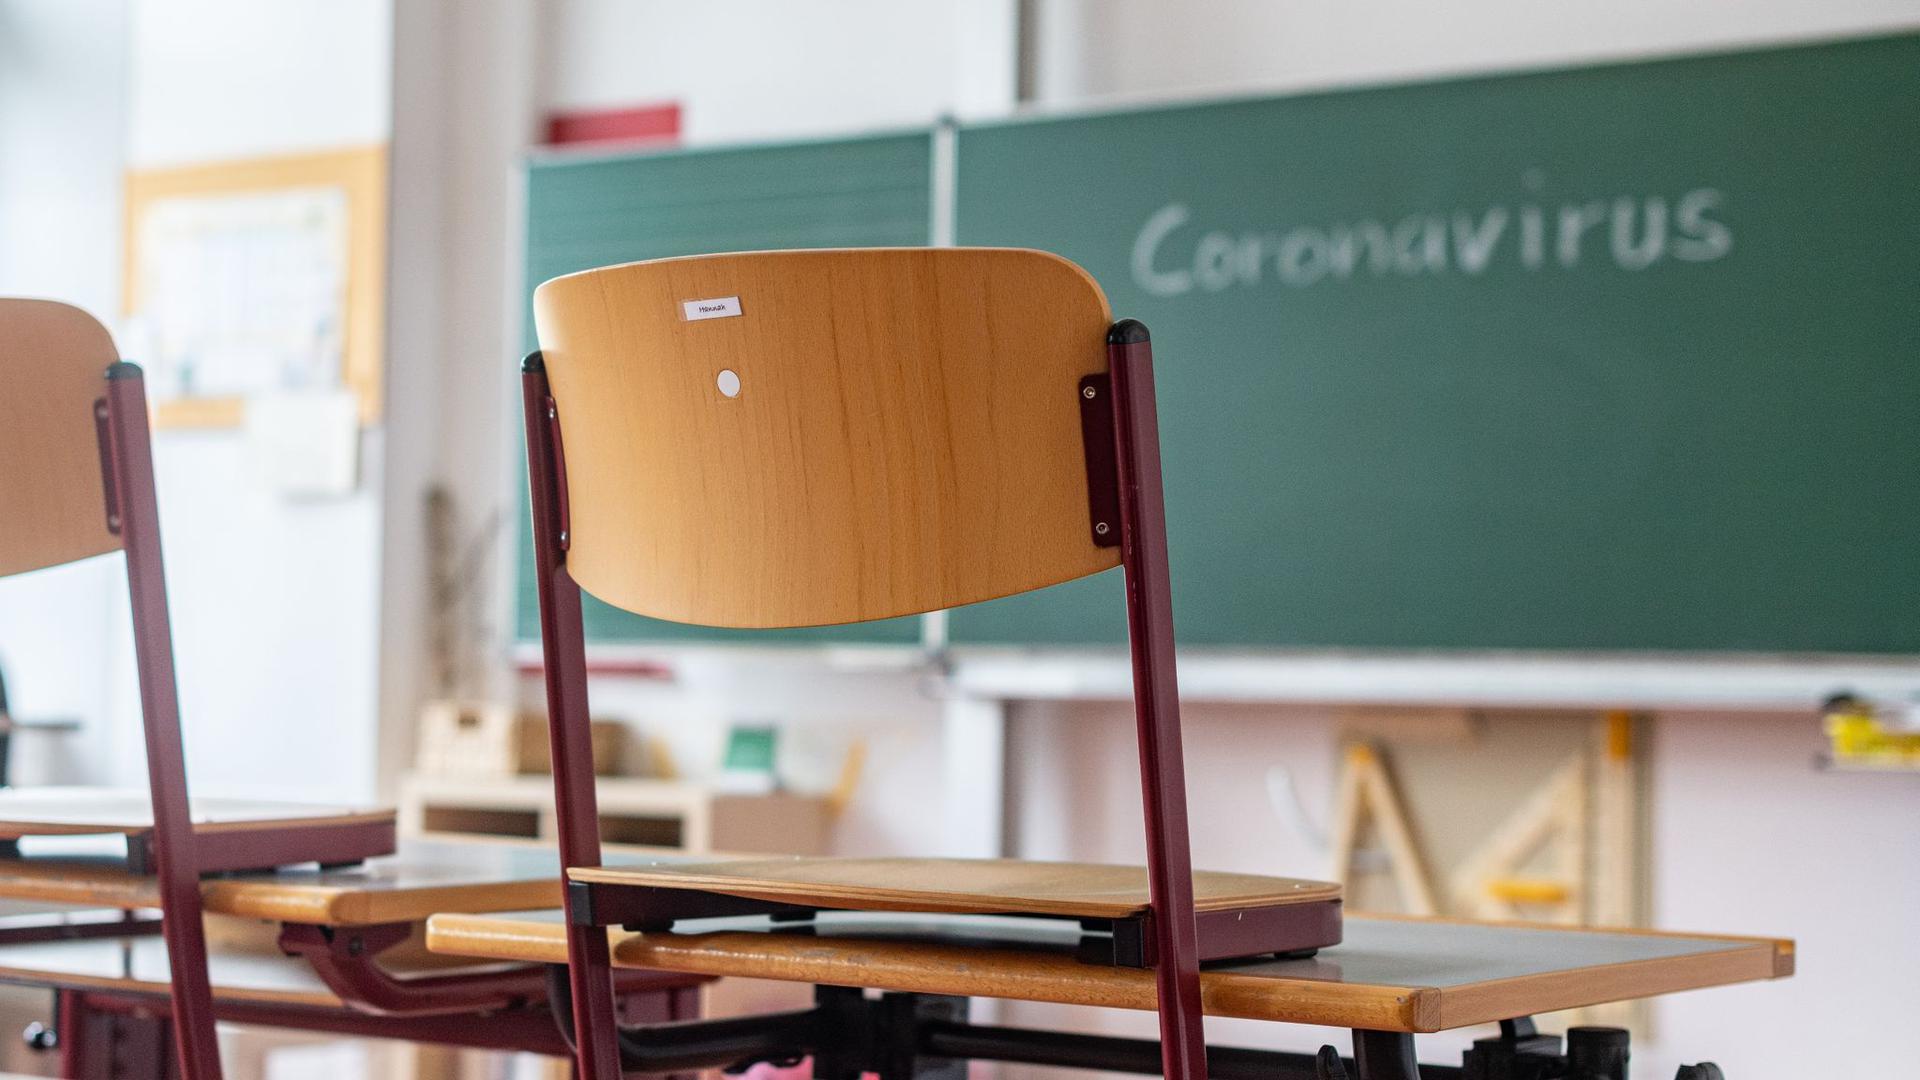 „Coronavirus“ steht auf einer Tafel in einem leeren Klassenzimmer.